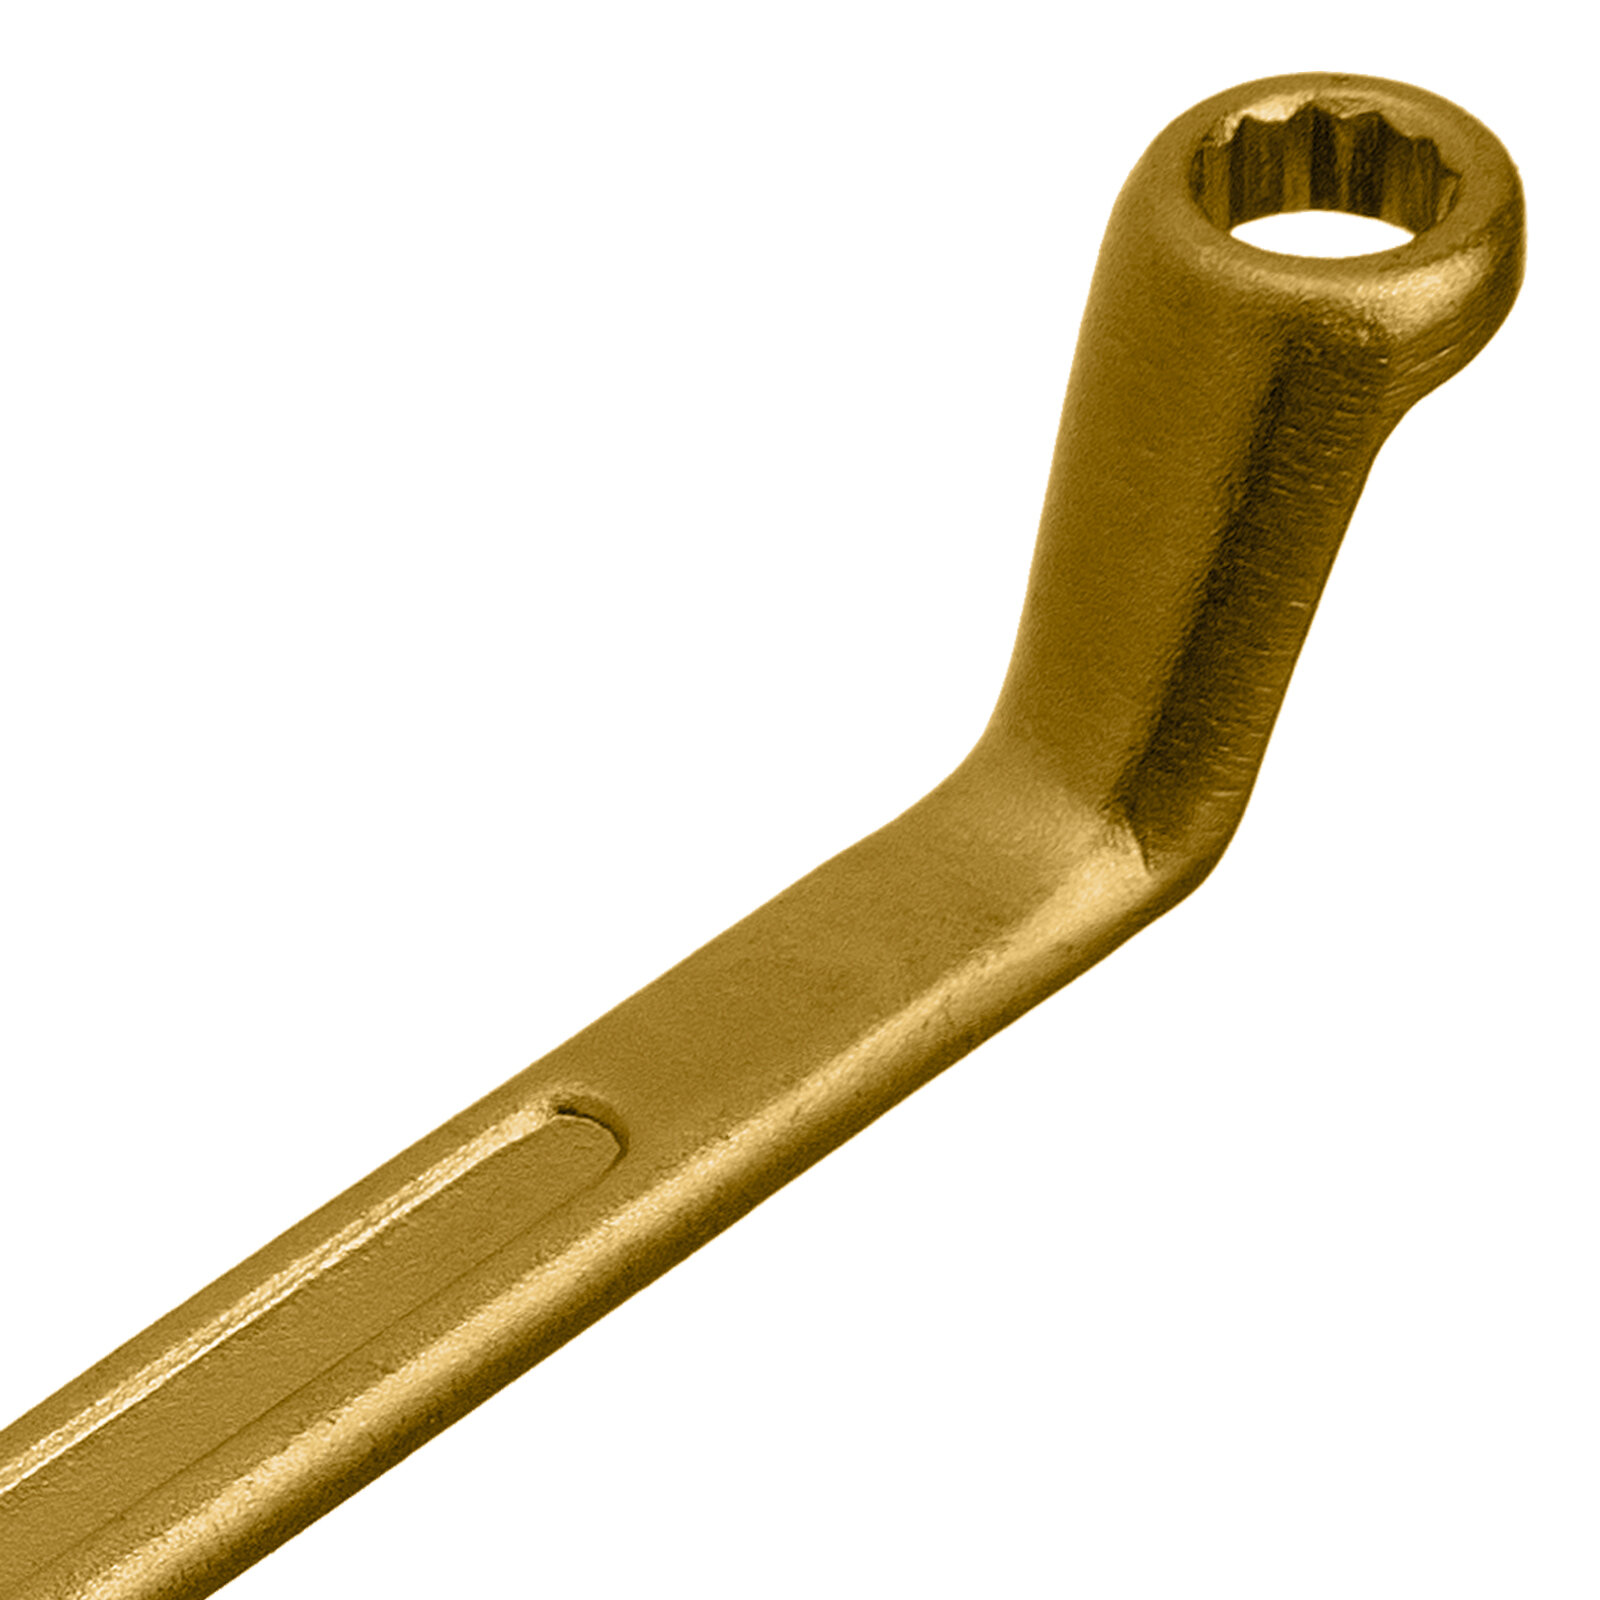 Ключ накидной Сибртех 8 х 10 мм, желтый цинк 14614